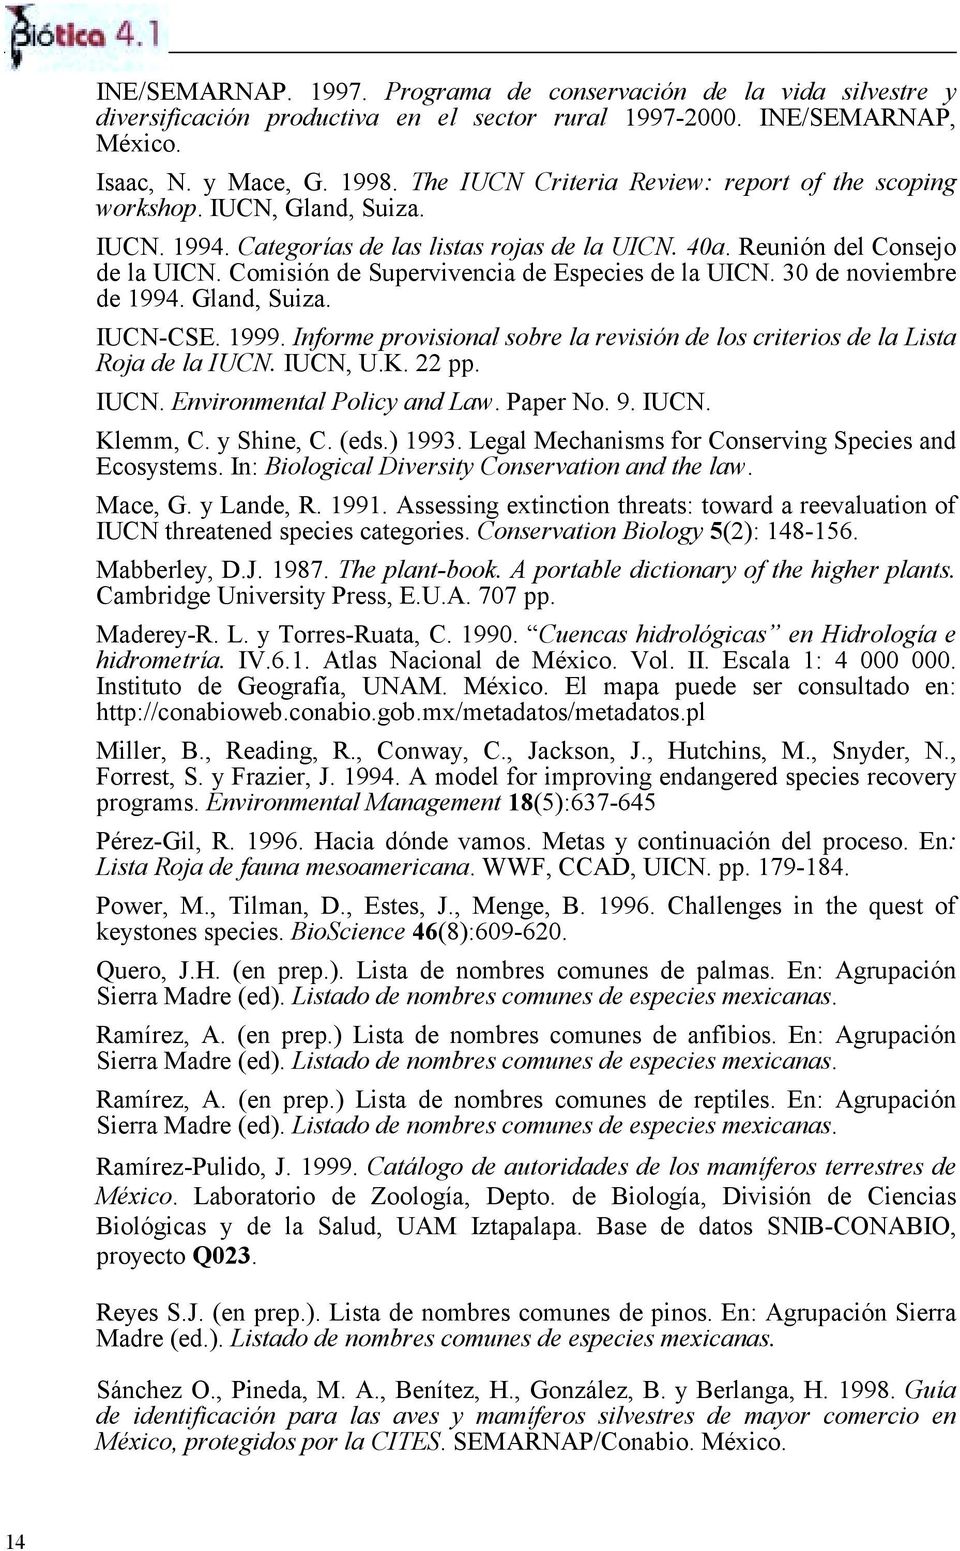 Comisión de Supervivencia de Especies de la UICN. 30 de noviembre de 1994. Gland, Suiza. IUCN-CSE. 1999. Informe provisional sobre la revisión de los criterios de la Lista Roja de la IUCN. IUCN, U.K.